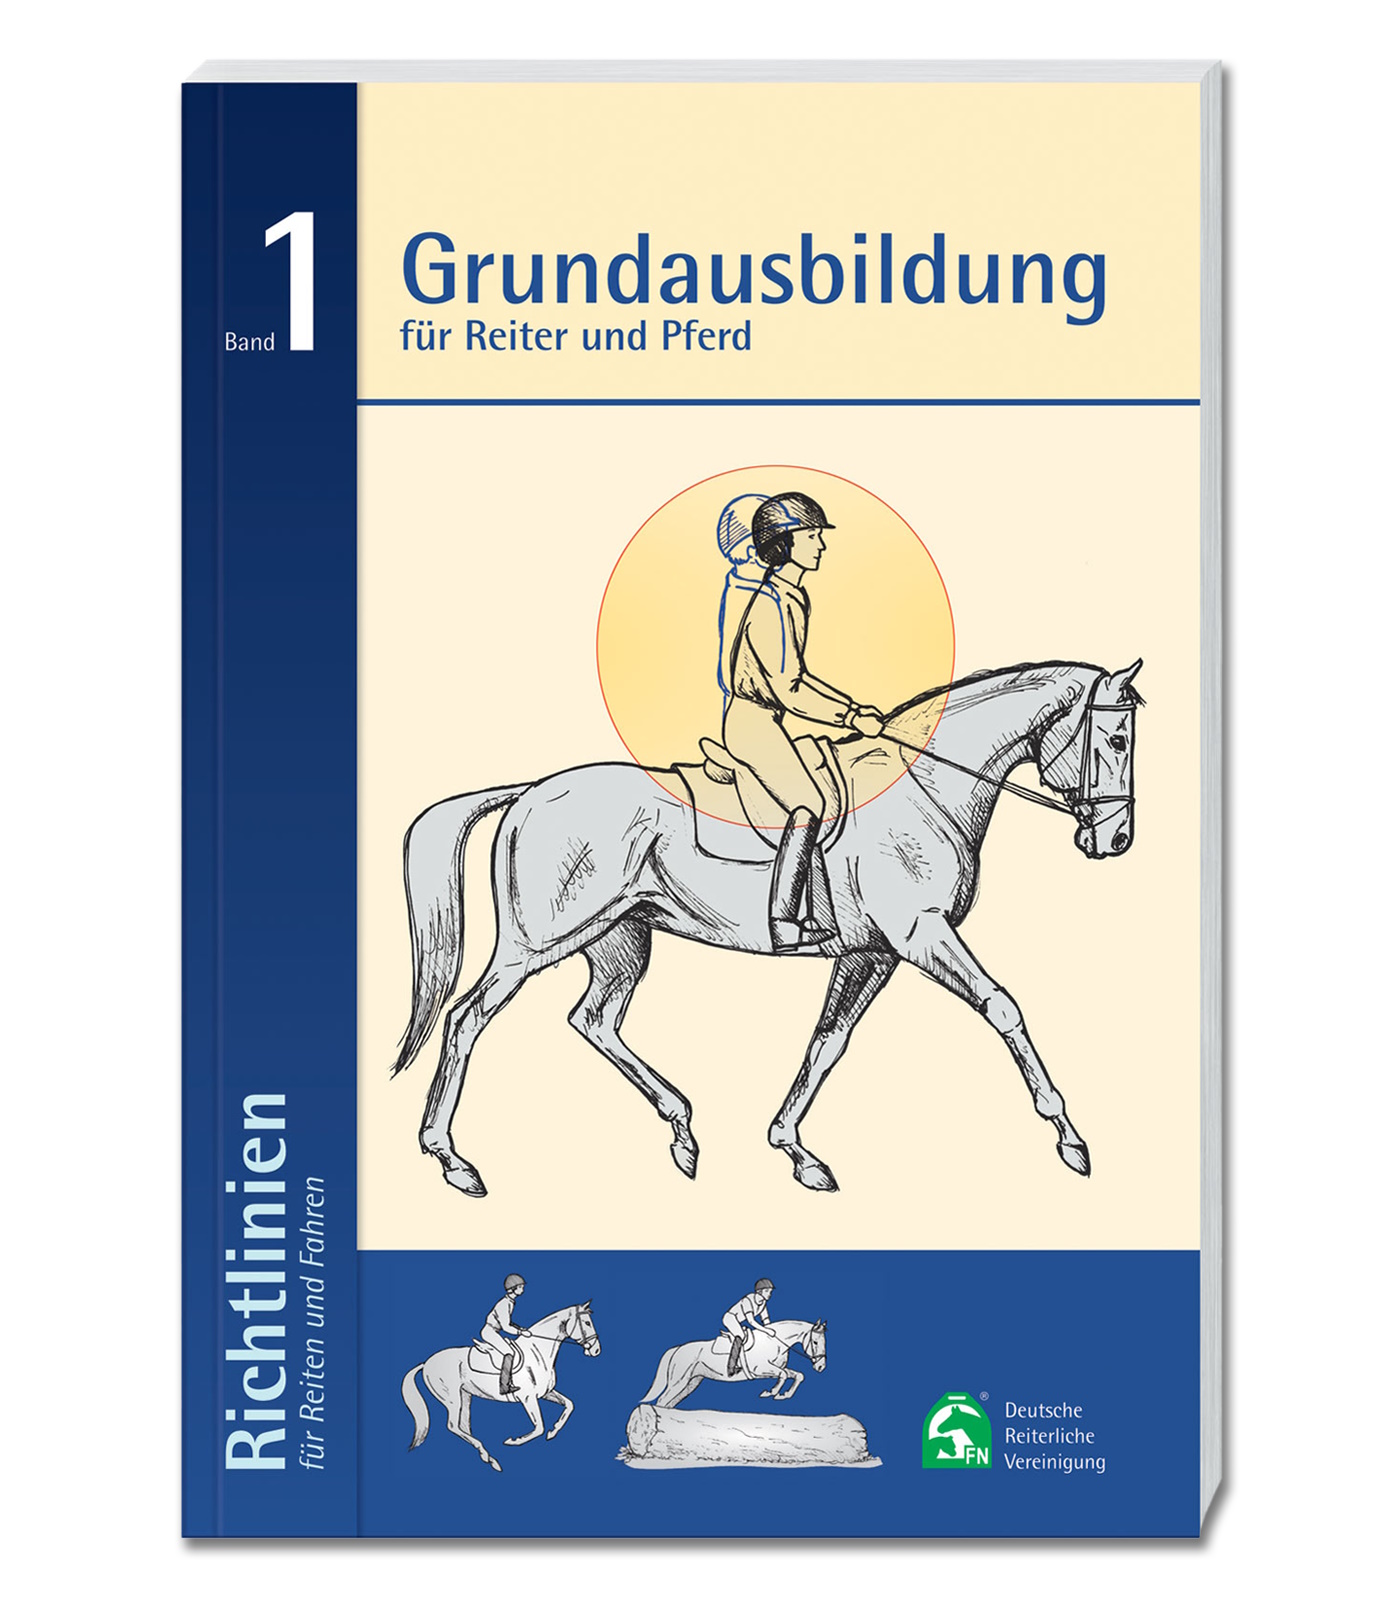 Deutsche Reiterliche Vereinigung (FN) Richtlinien Band 1 - Grundausbildung - uni  - Stck.